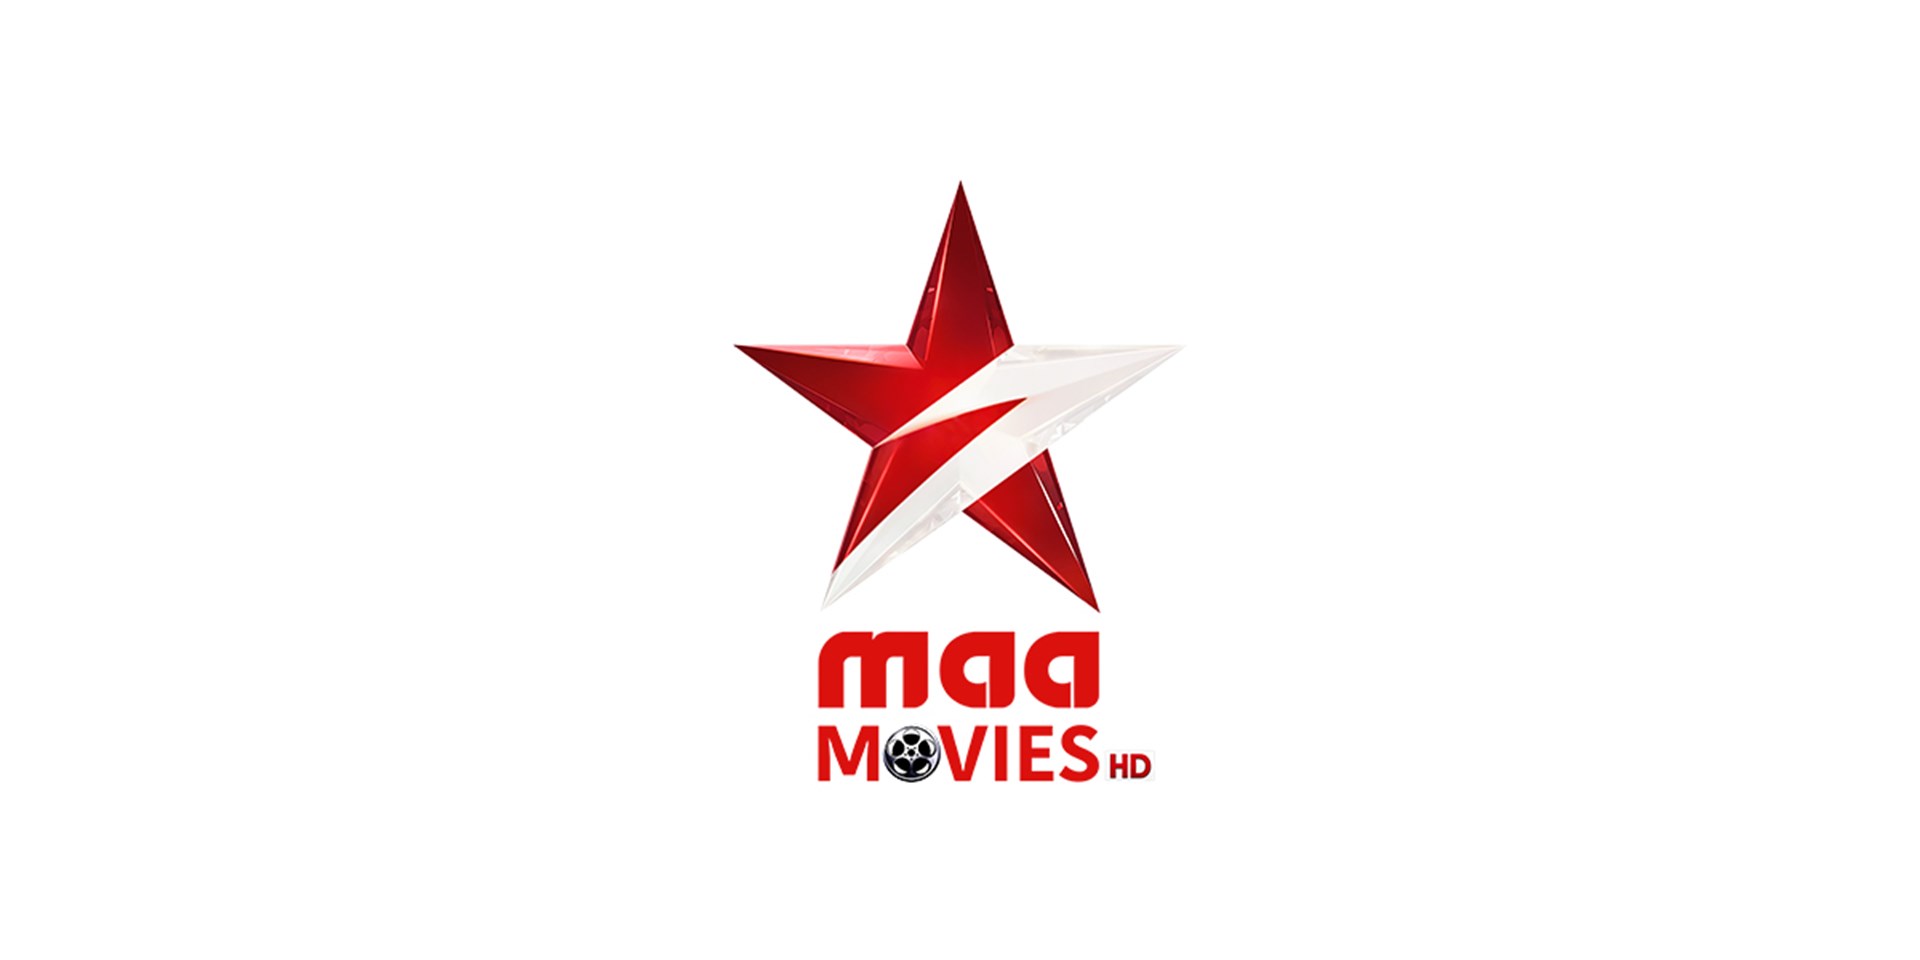 maa_movies_hd_logo_1200_x_600.jpg